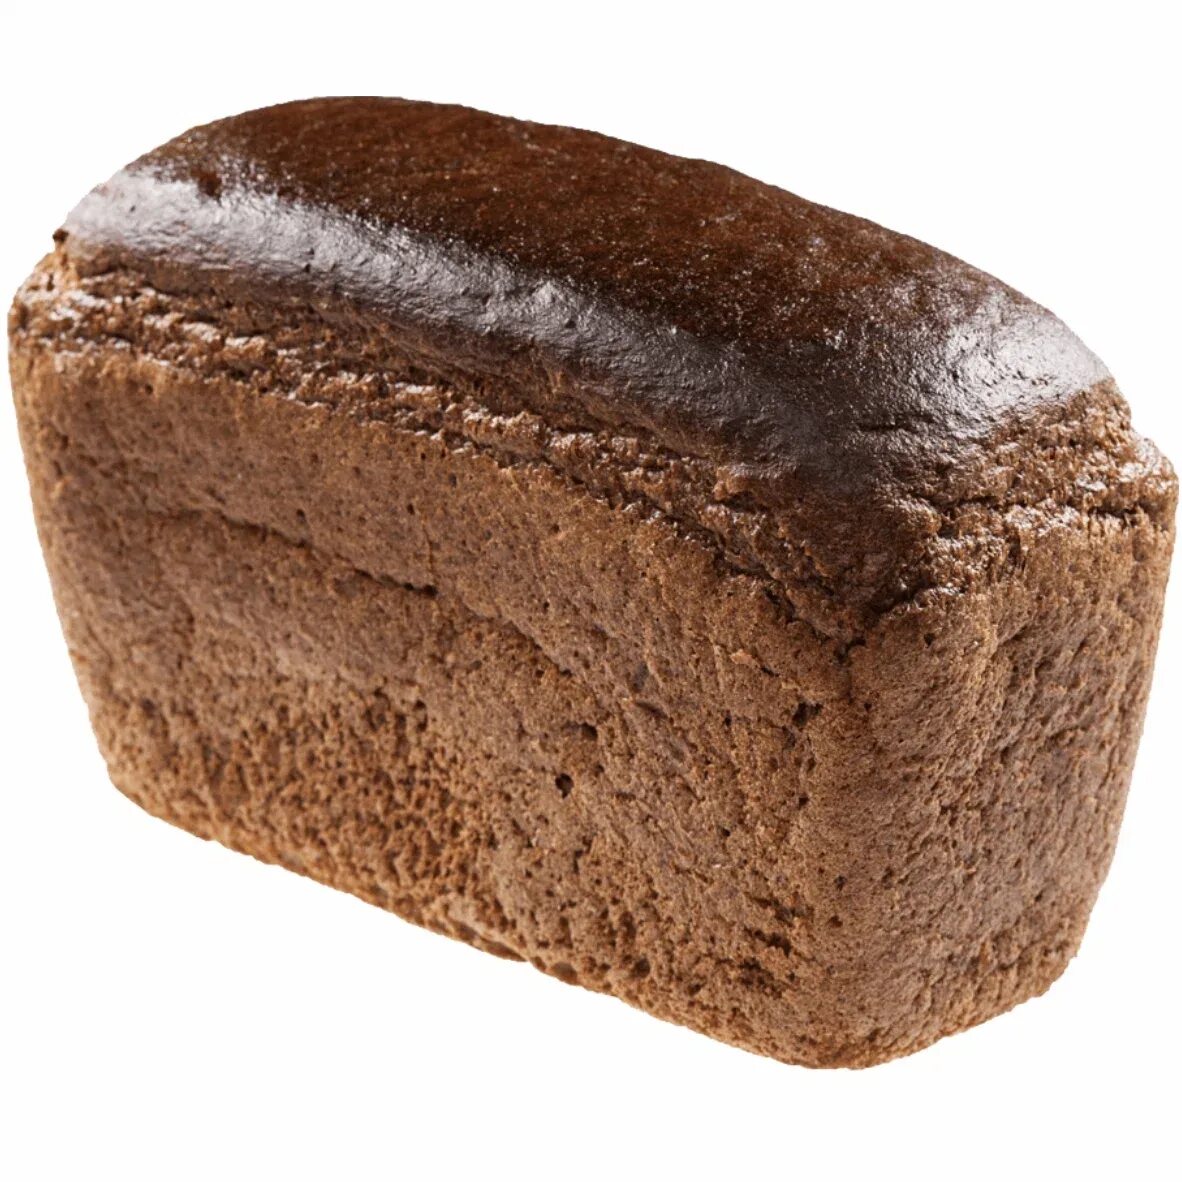 Хлеб солодовый ржано пшеничный. Буханка серого хлеба. Черный хлеб. Буханка черного хлеба.